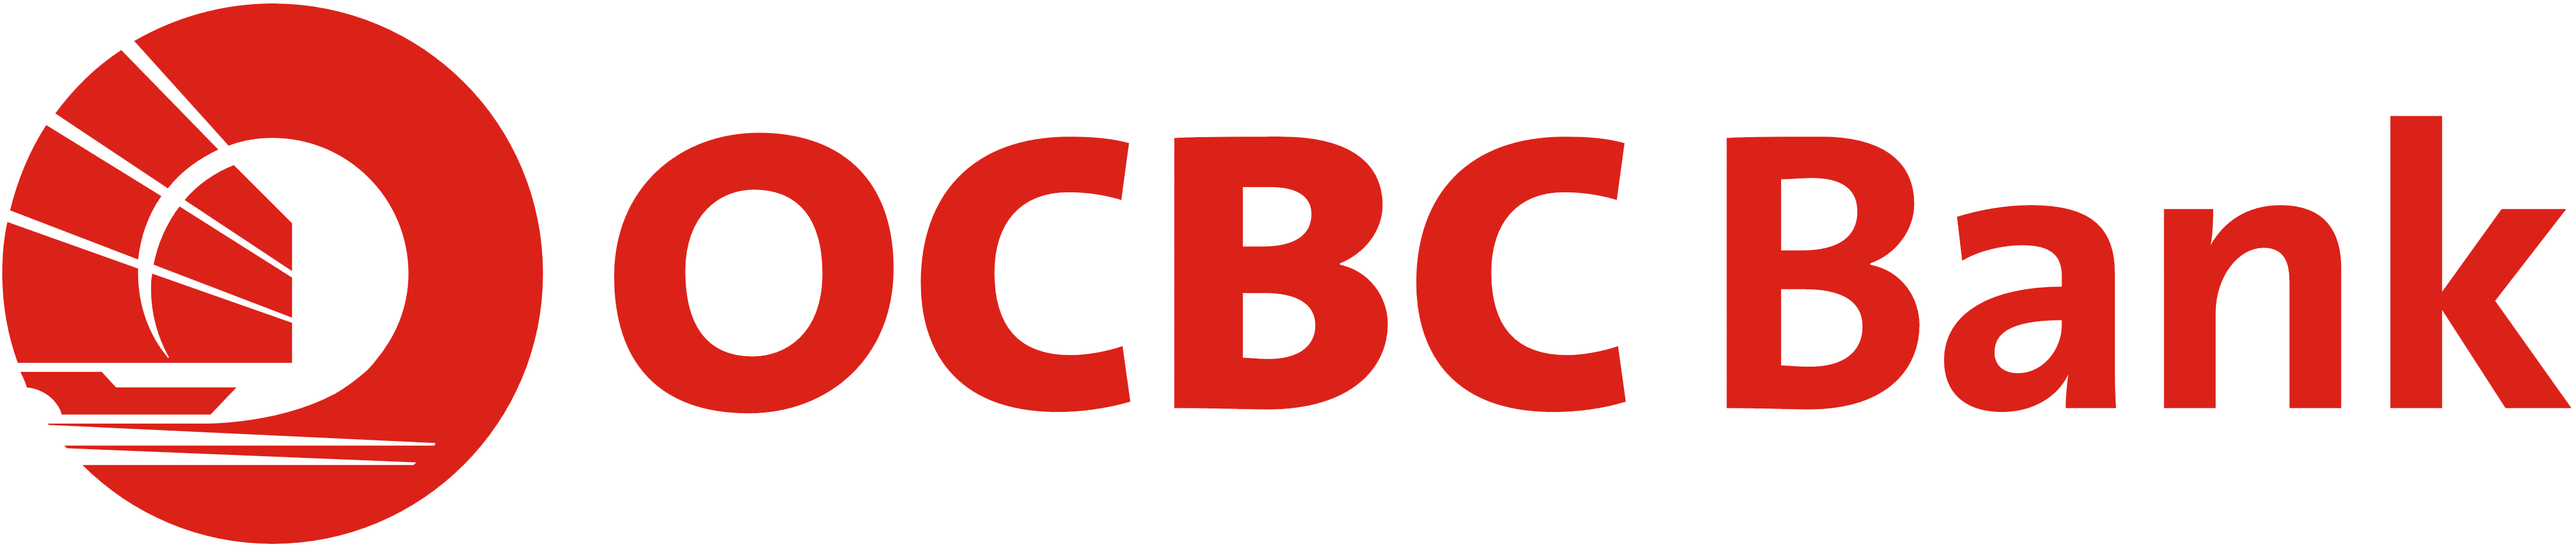 OCBC Logo - OCBC Bank Singapore